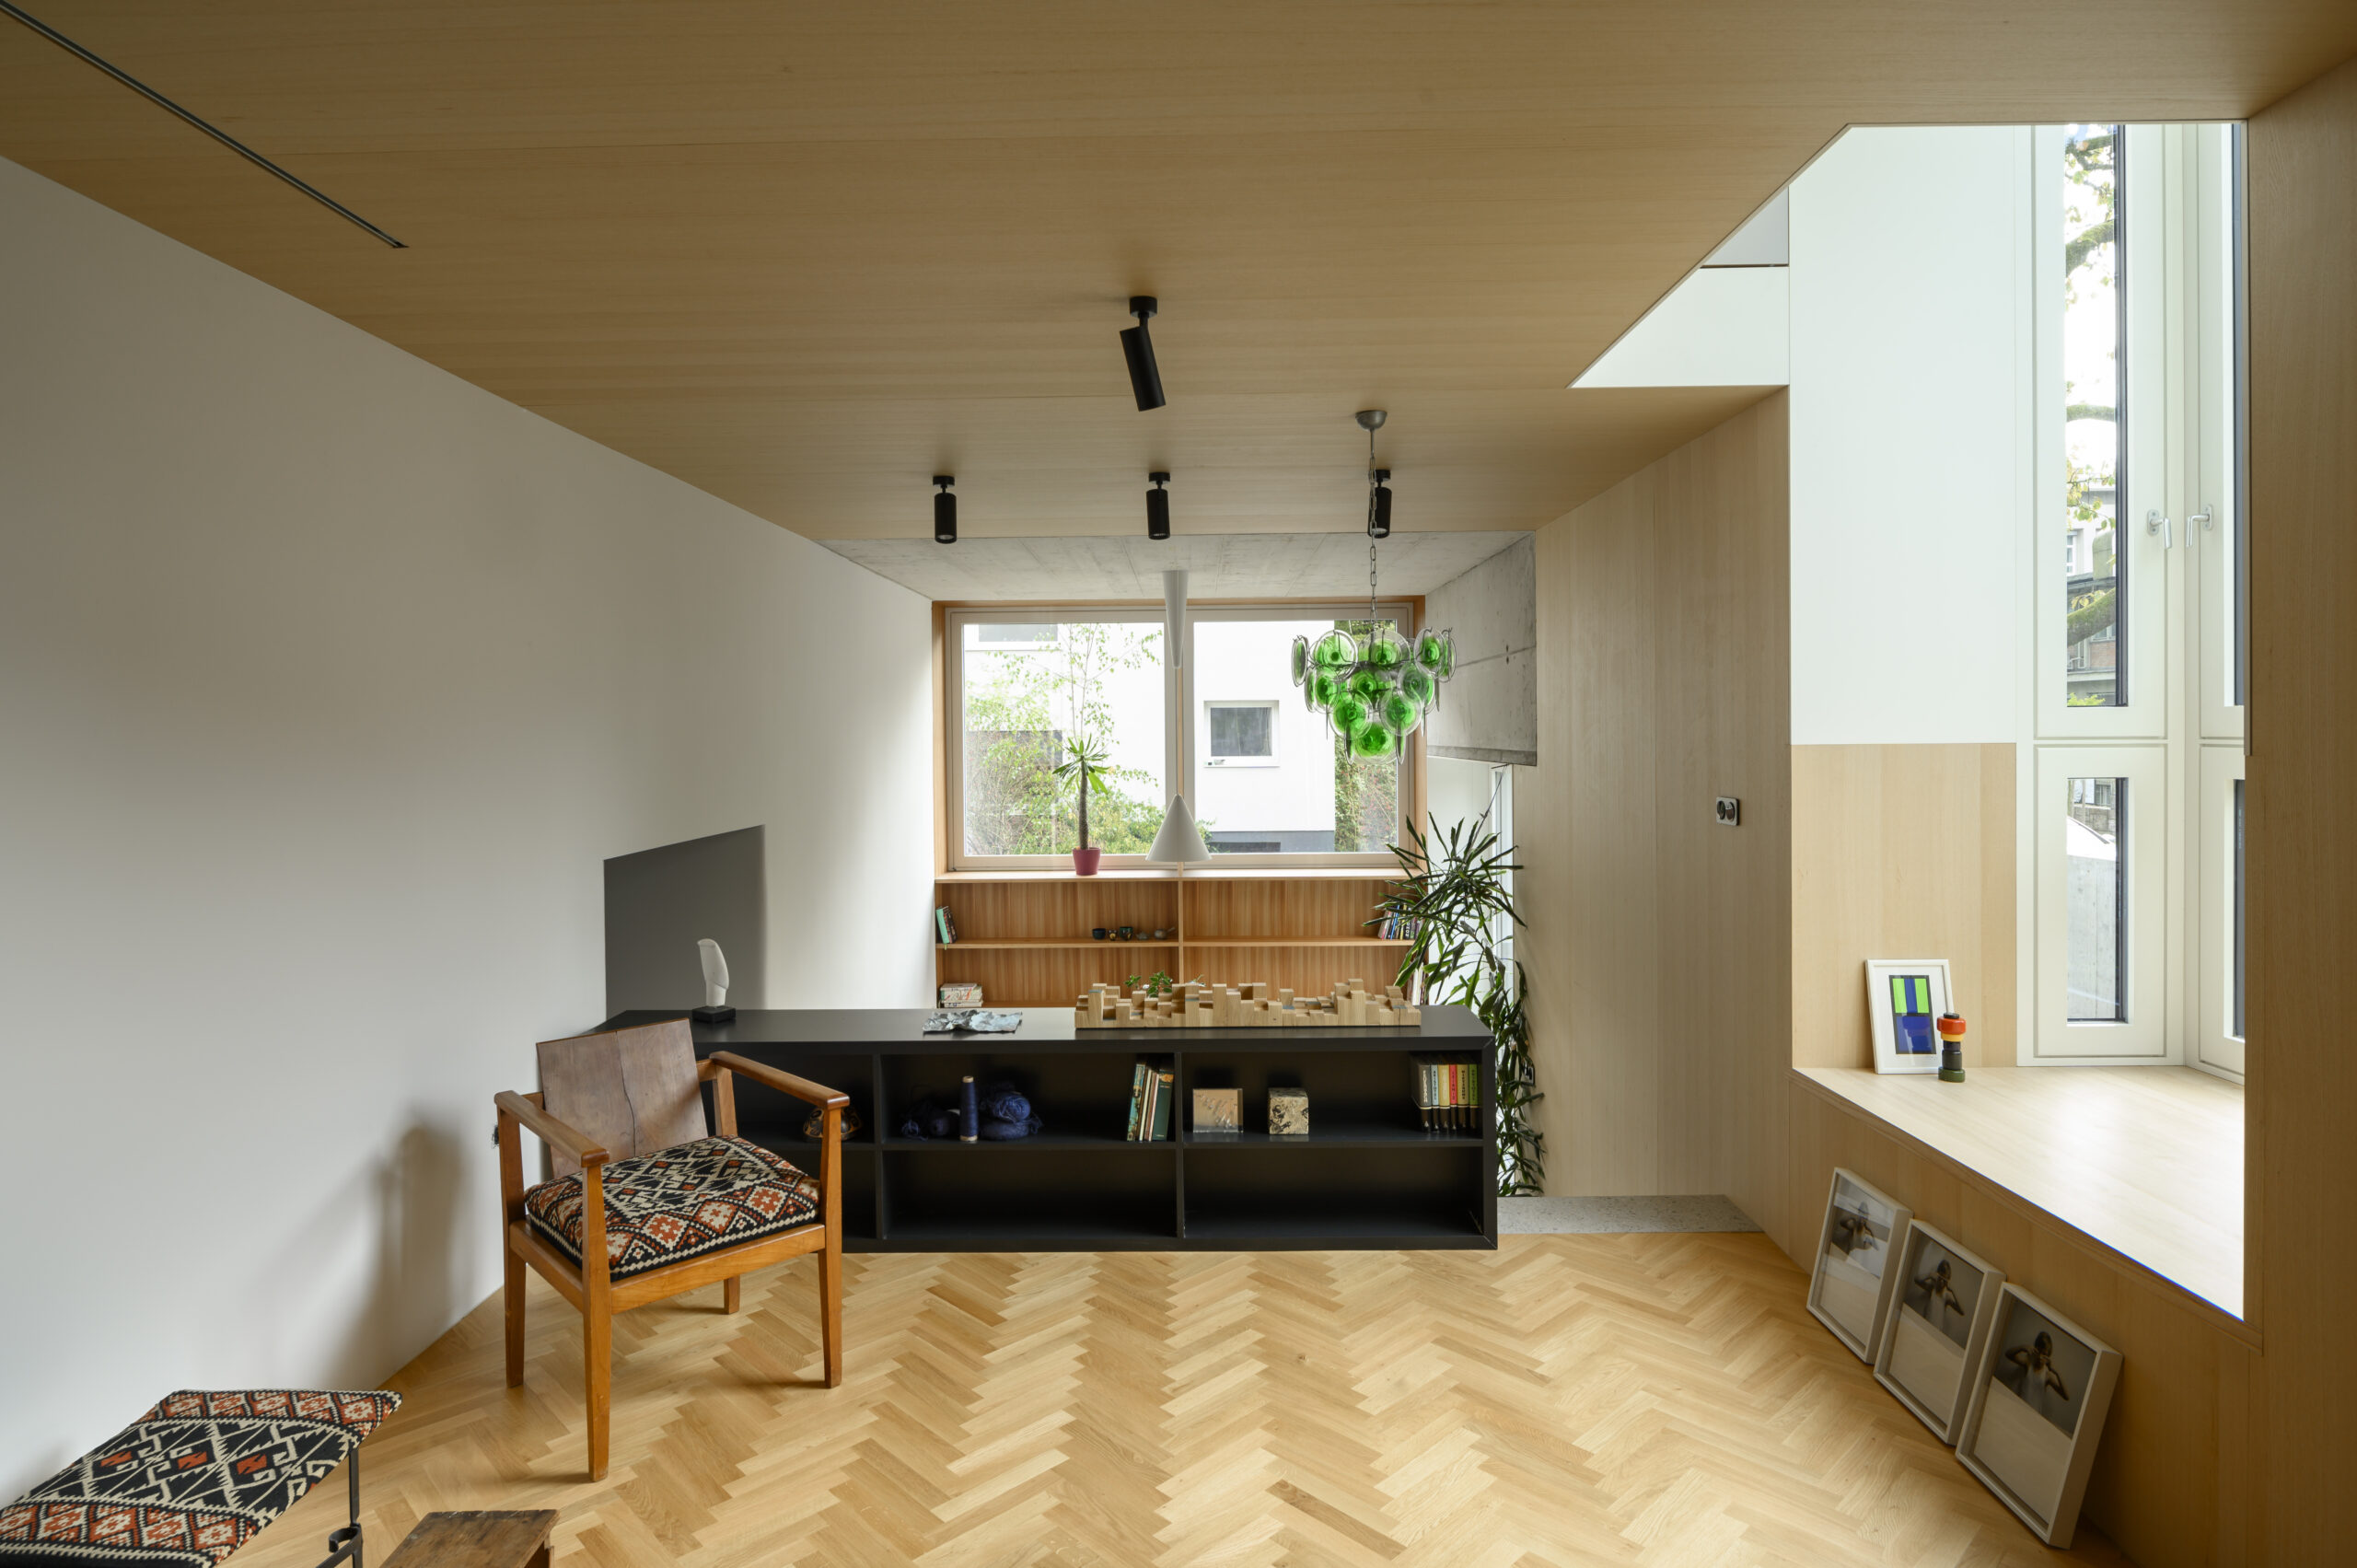 Prenova dveh vrstnih hiš stanovanjske zadruge »Progres – Mirje« v Ljubljani, 2023, arhitektura: Dans arhitekti, foto: Miran Kambič